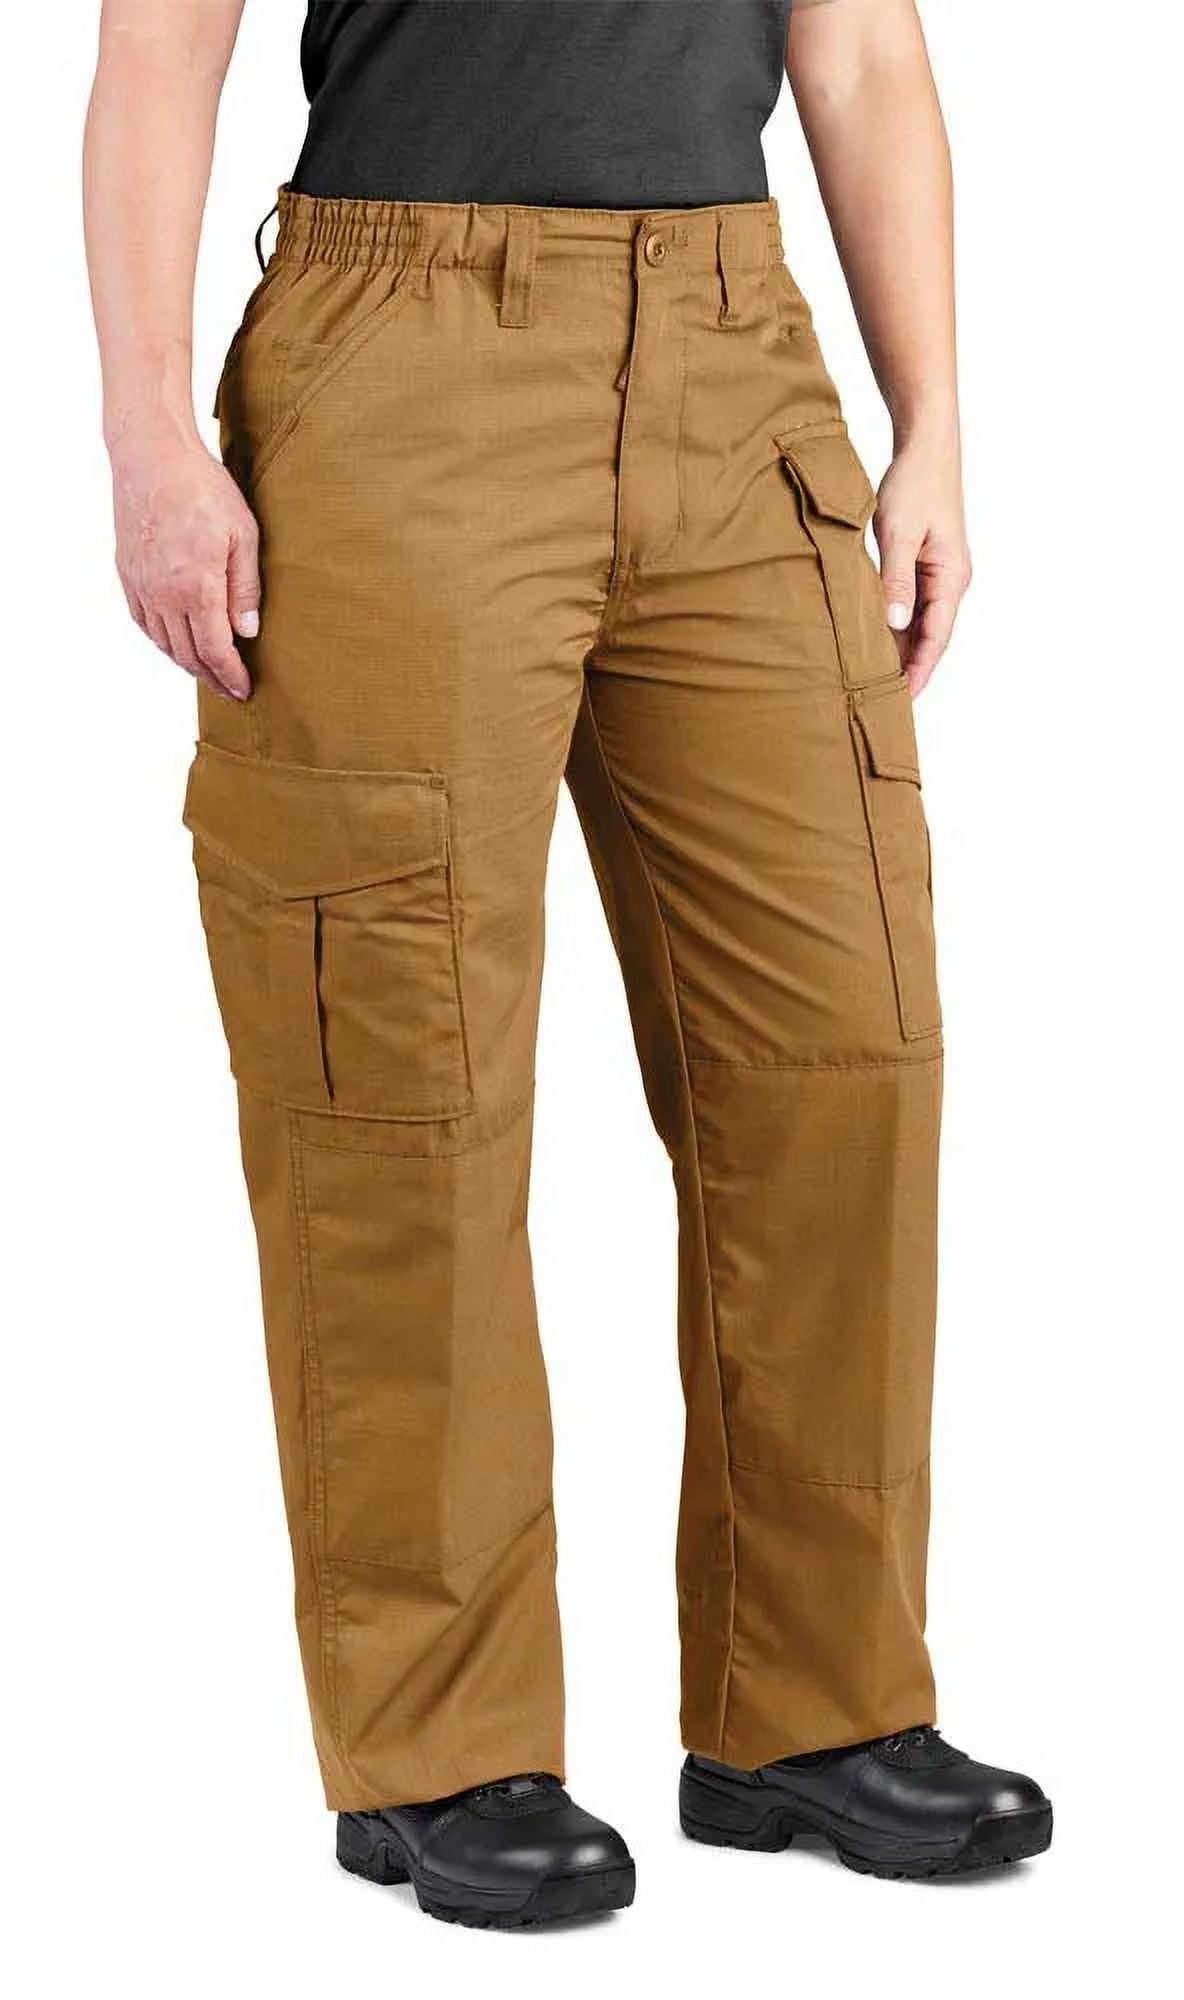 Propper Women's Uniform Pant-Coyote-10 - Walmart.com